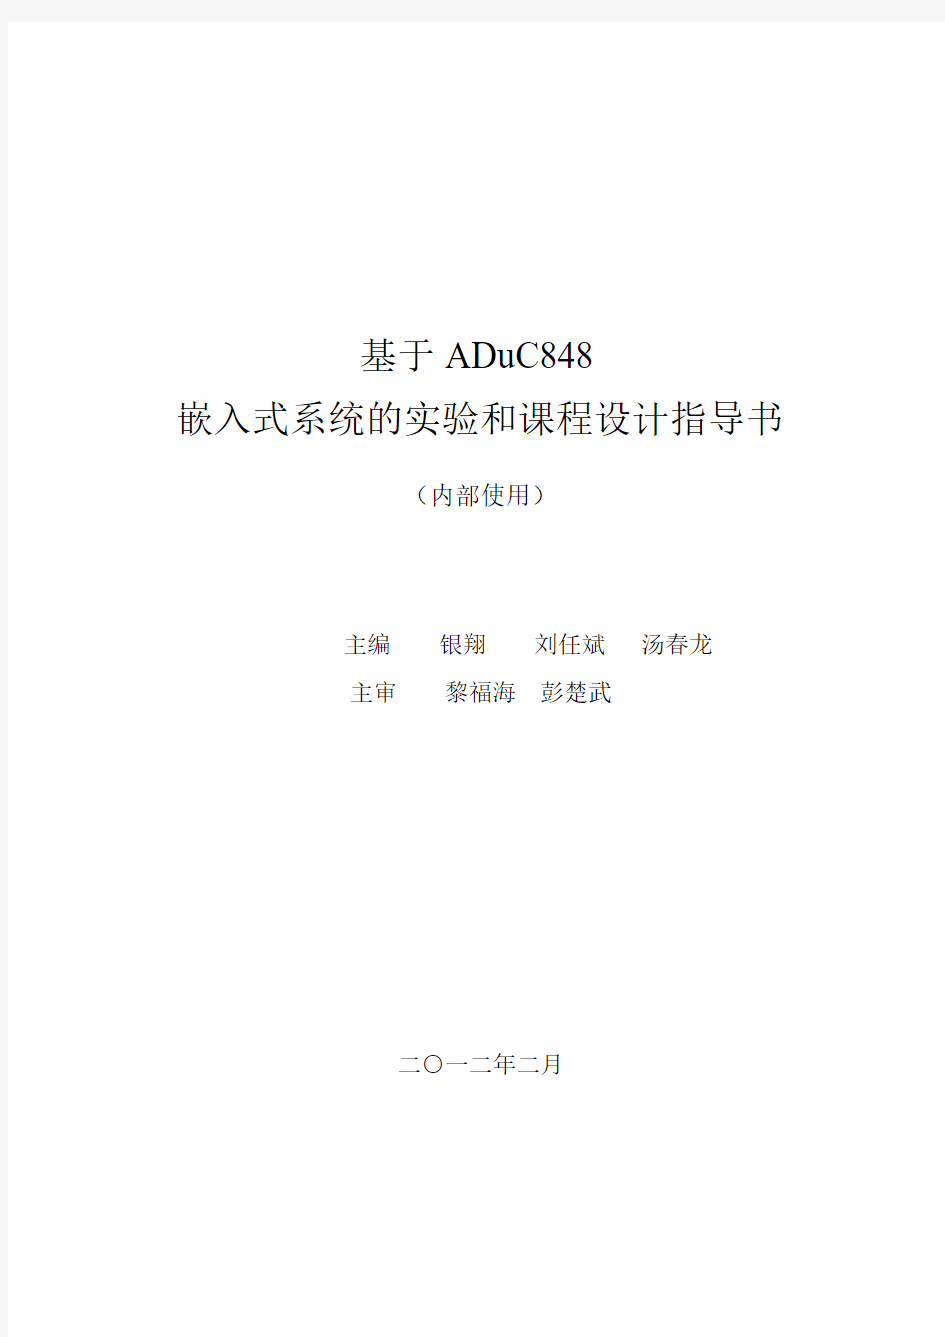 基于ADuC848开发板的单片机实验和课程设计指导书2012